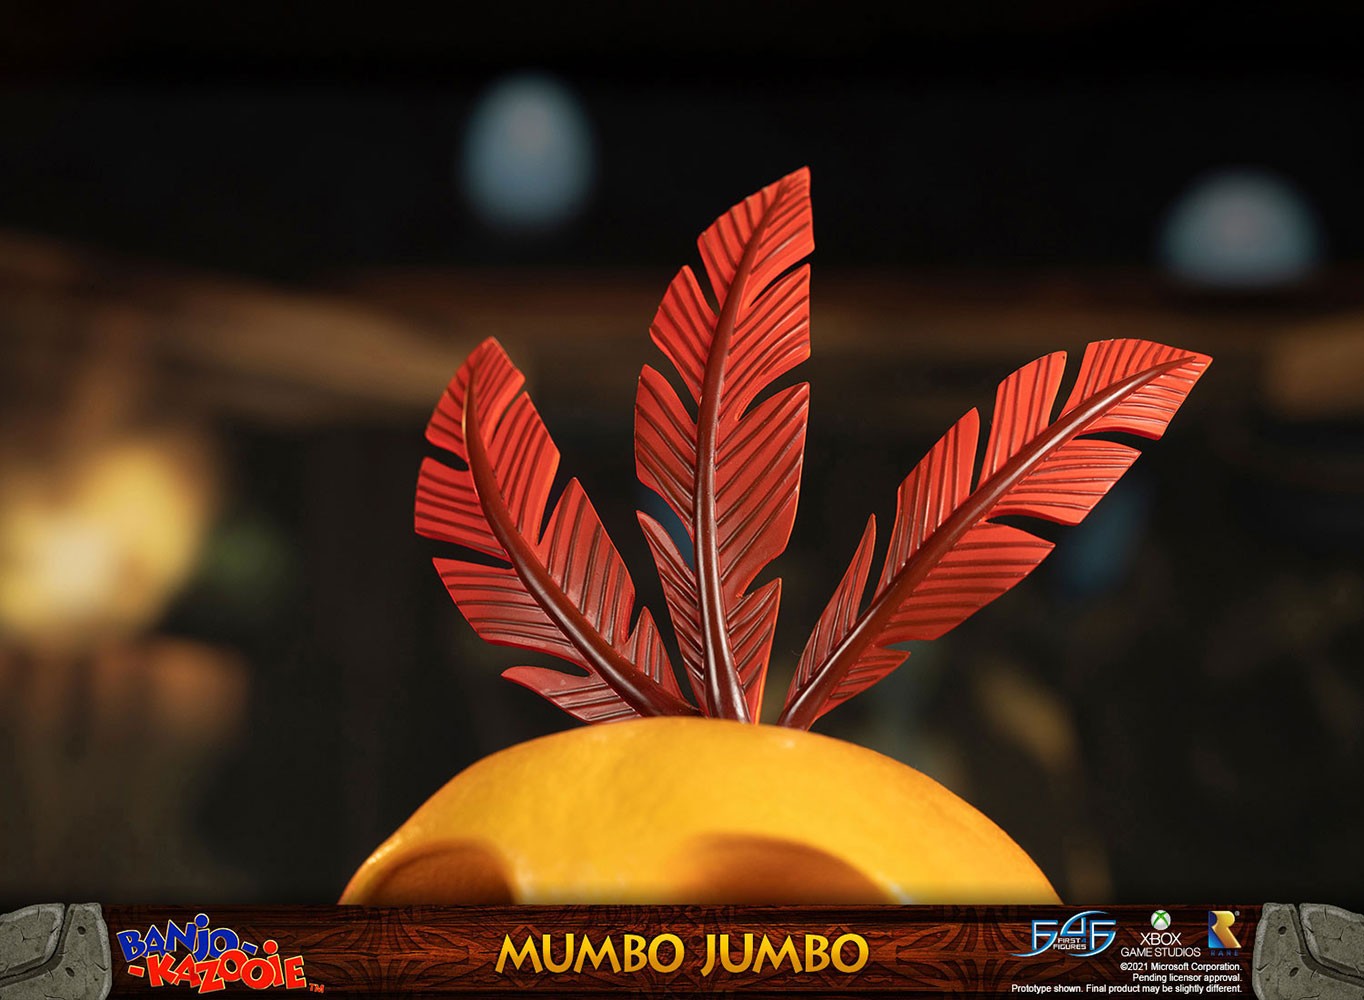 Mumbo Jumbo (Standard Edition)- Prototype Shown